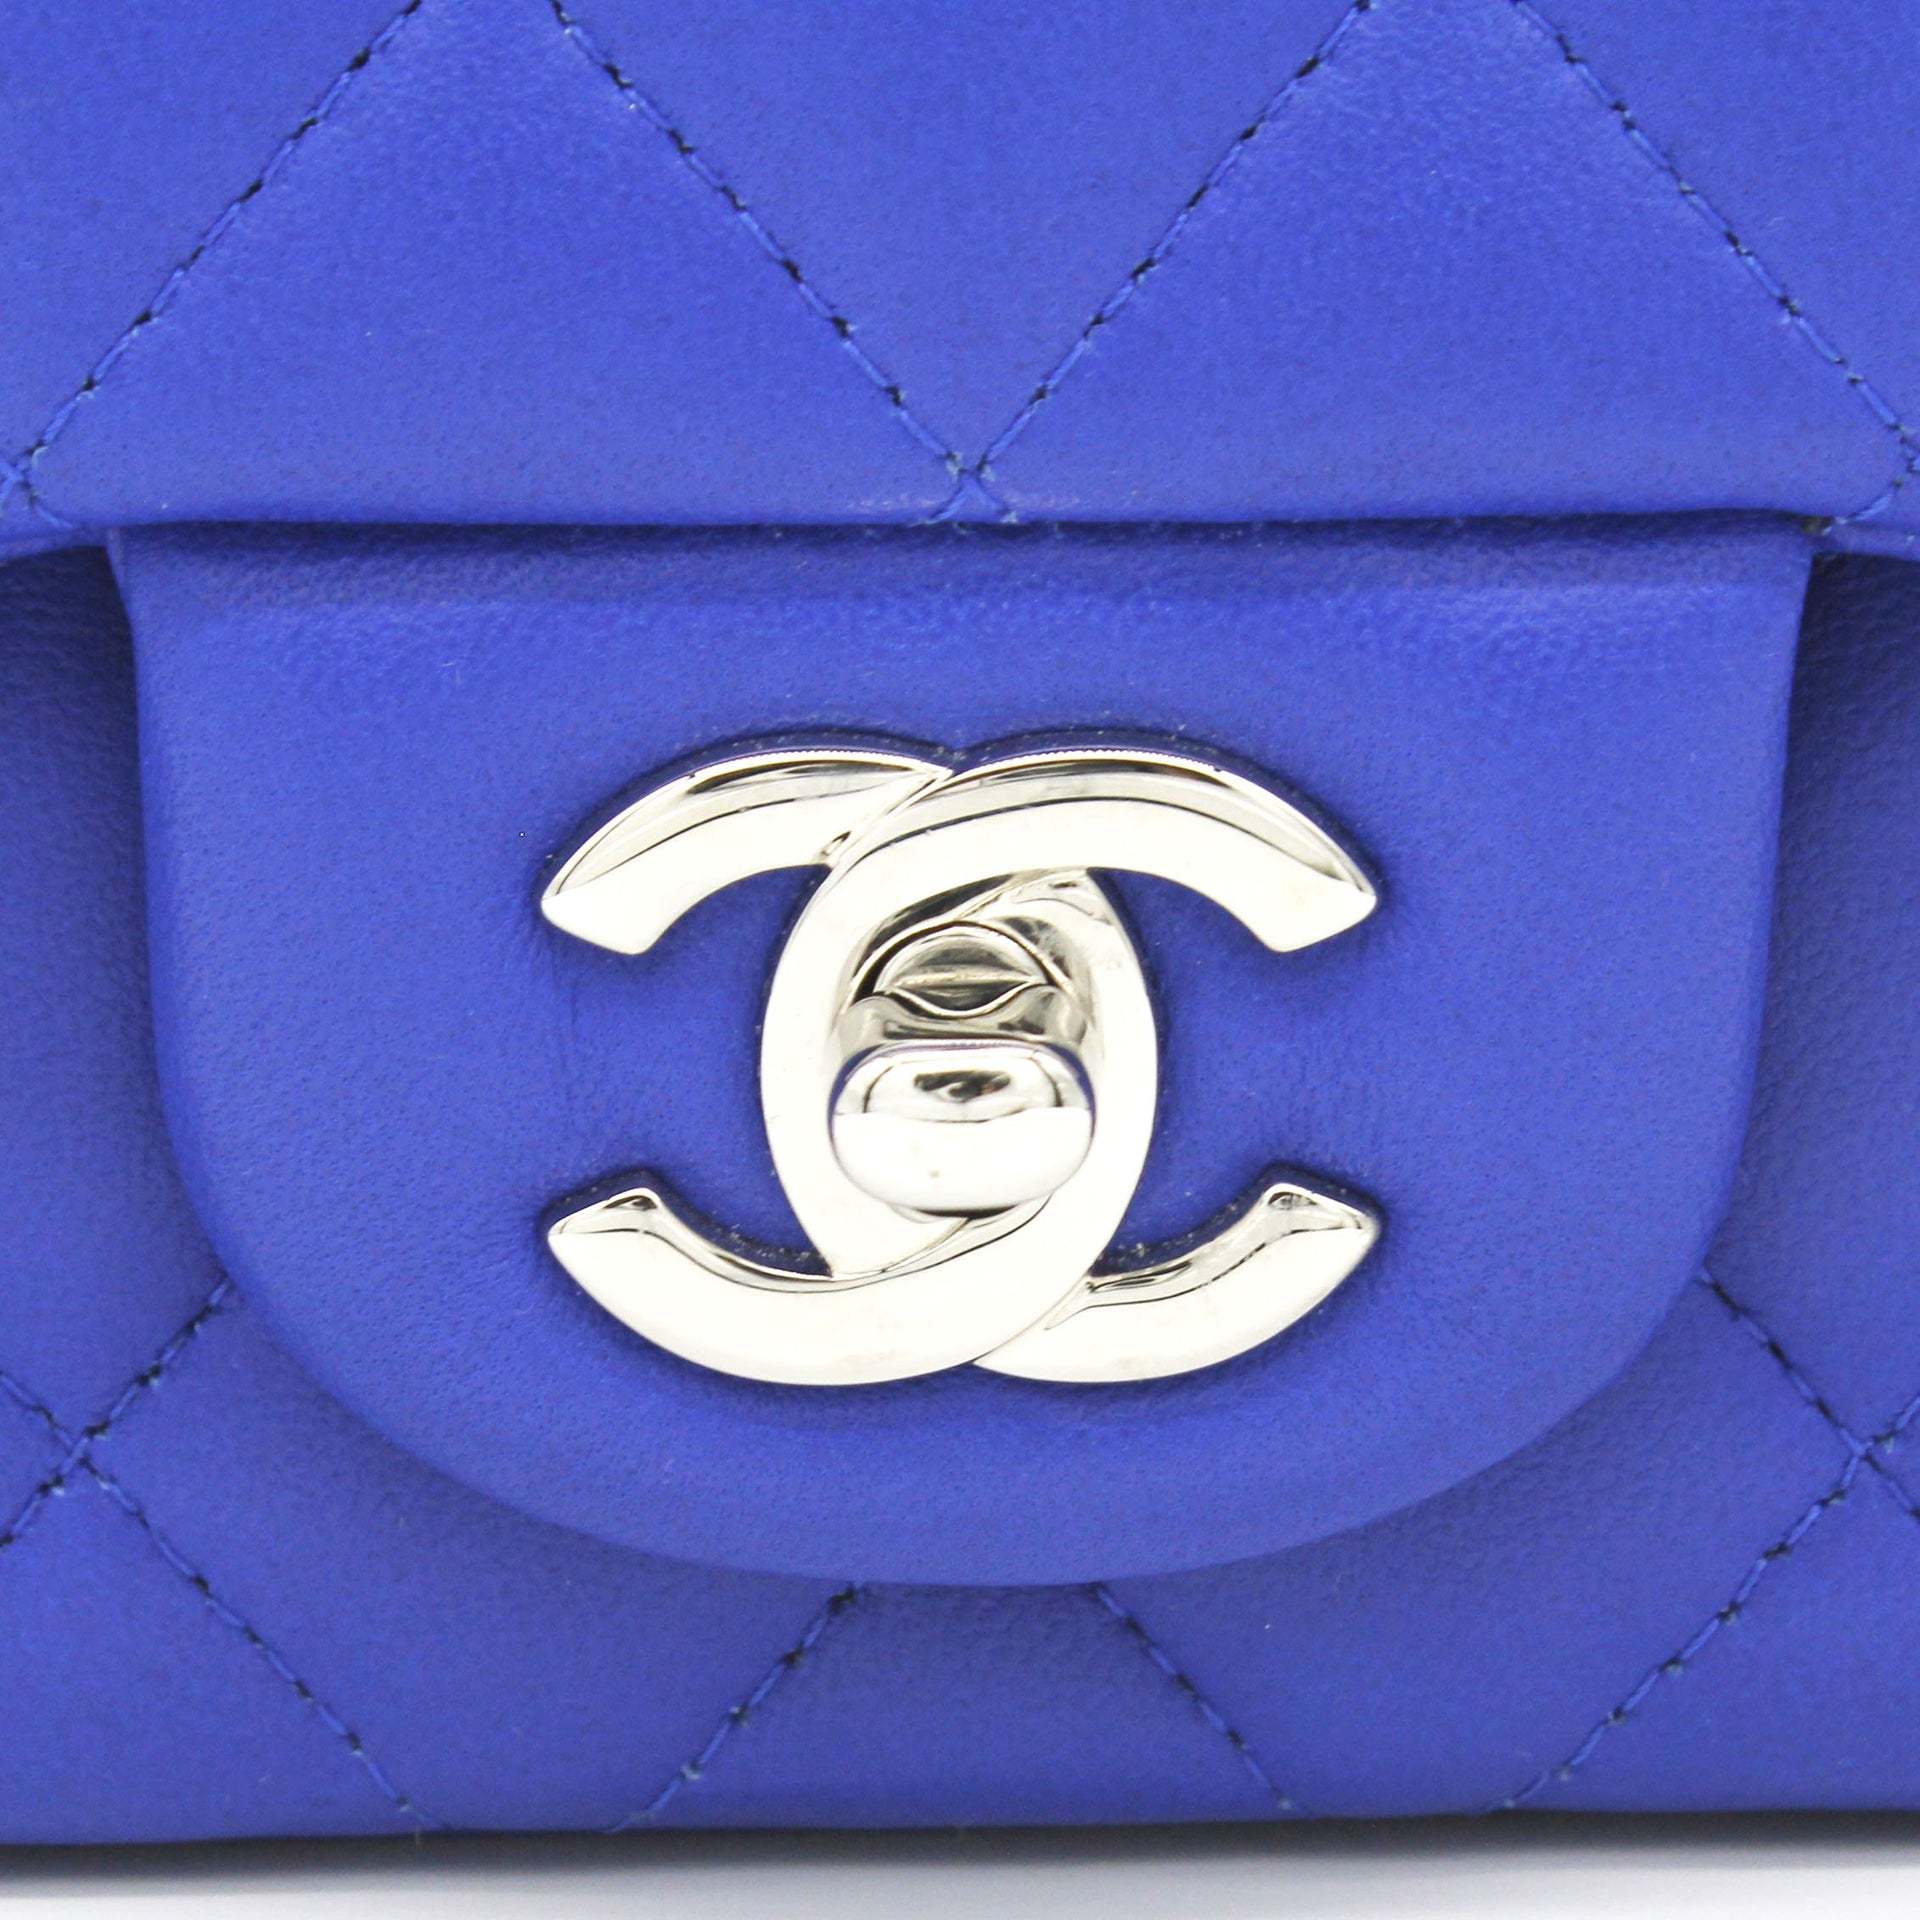 Chanel Rare Mini Classic Flap Mini in Blue